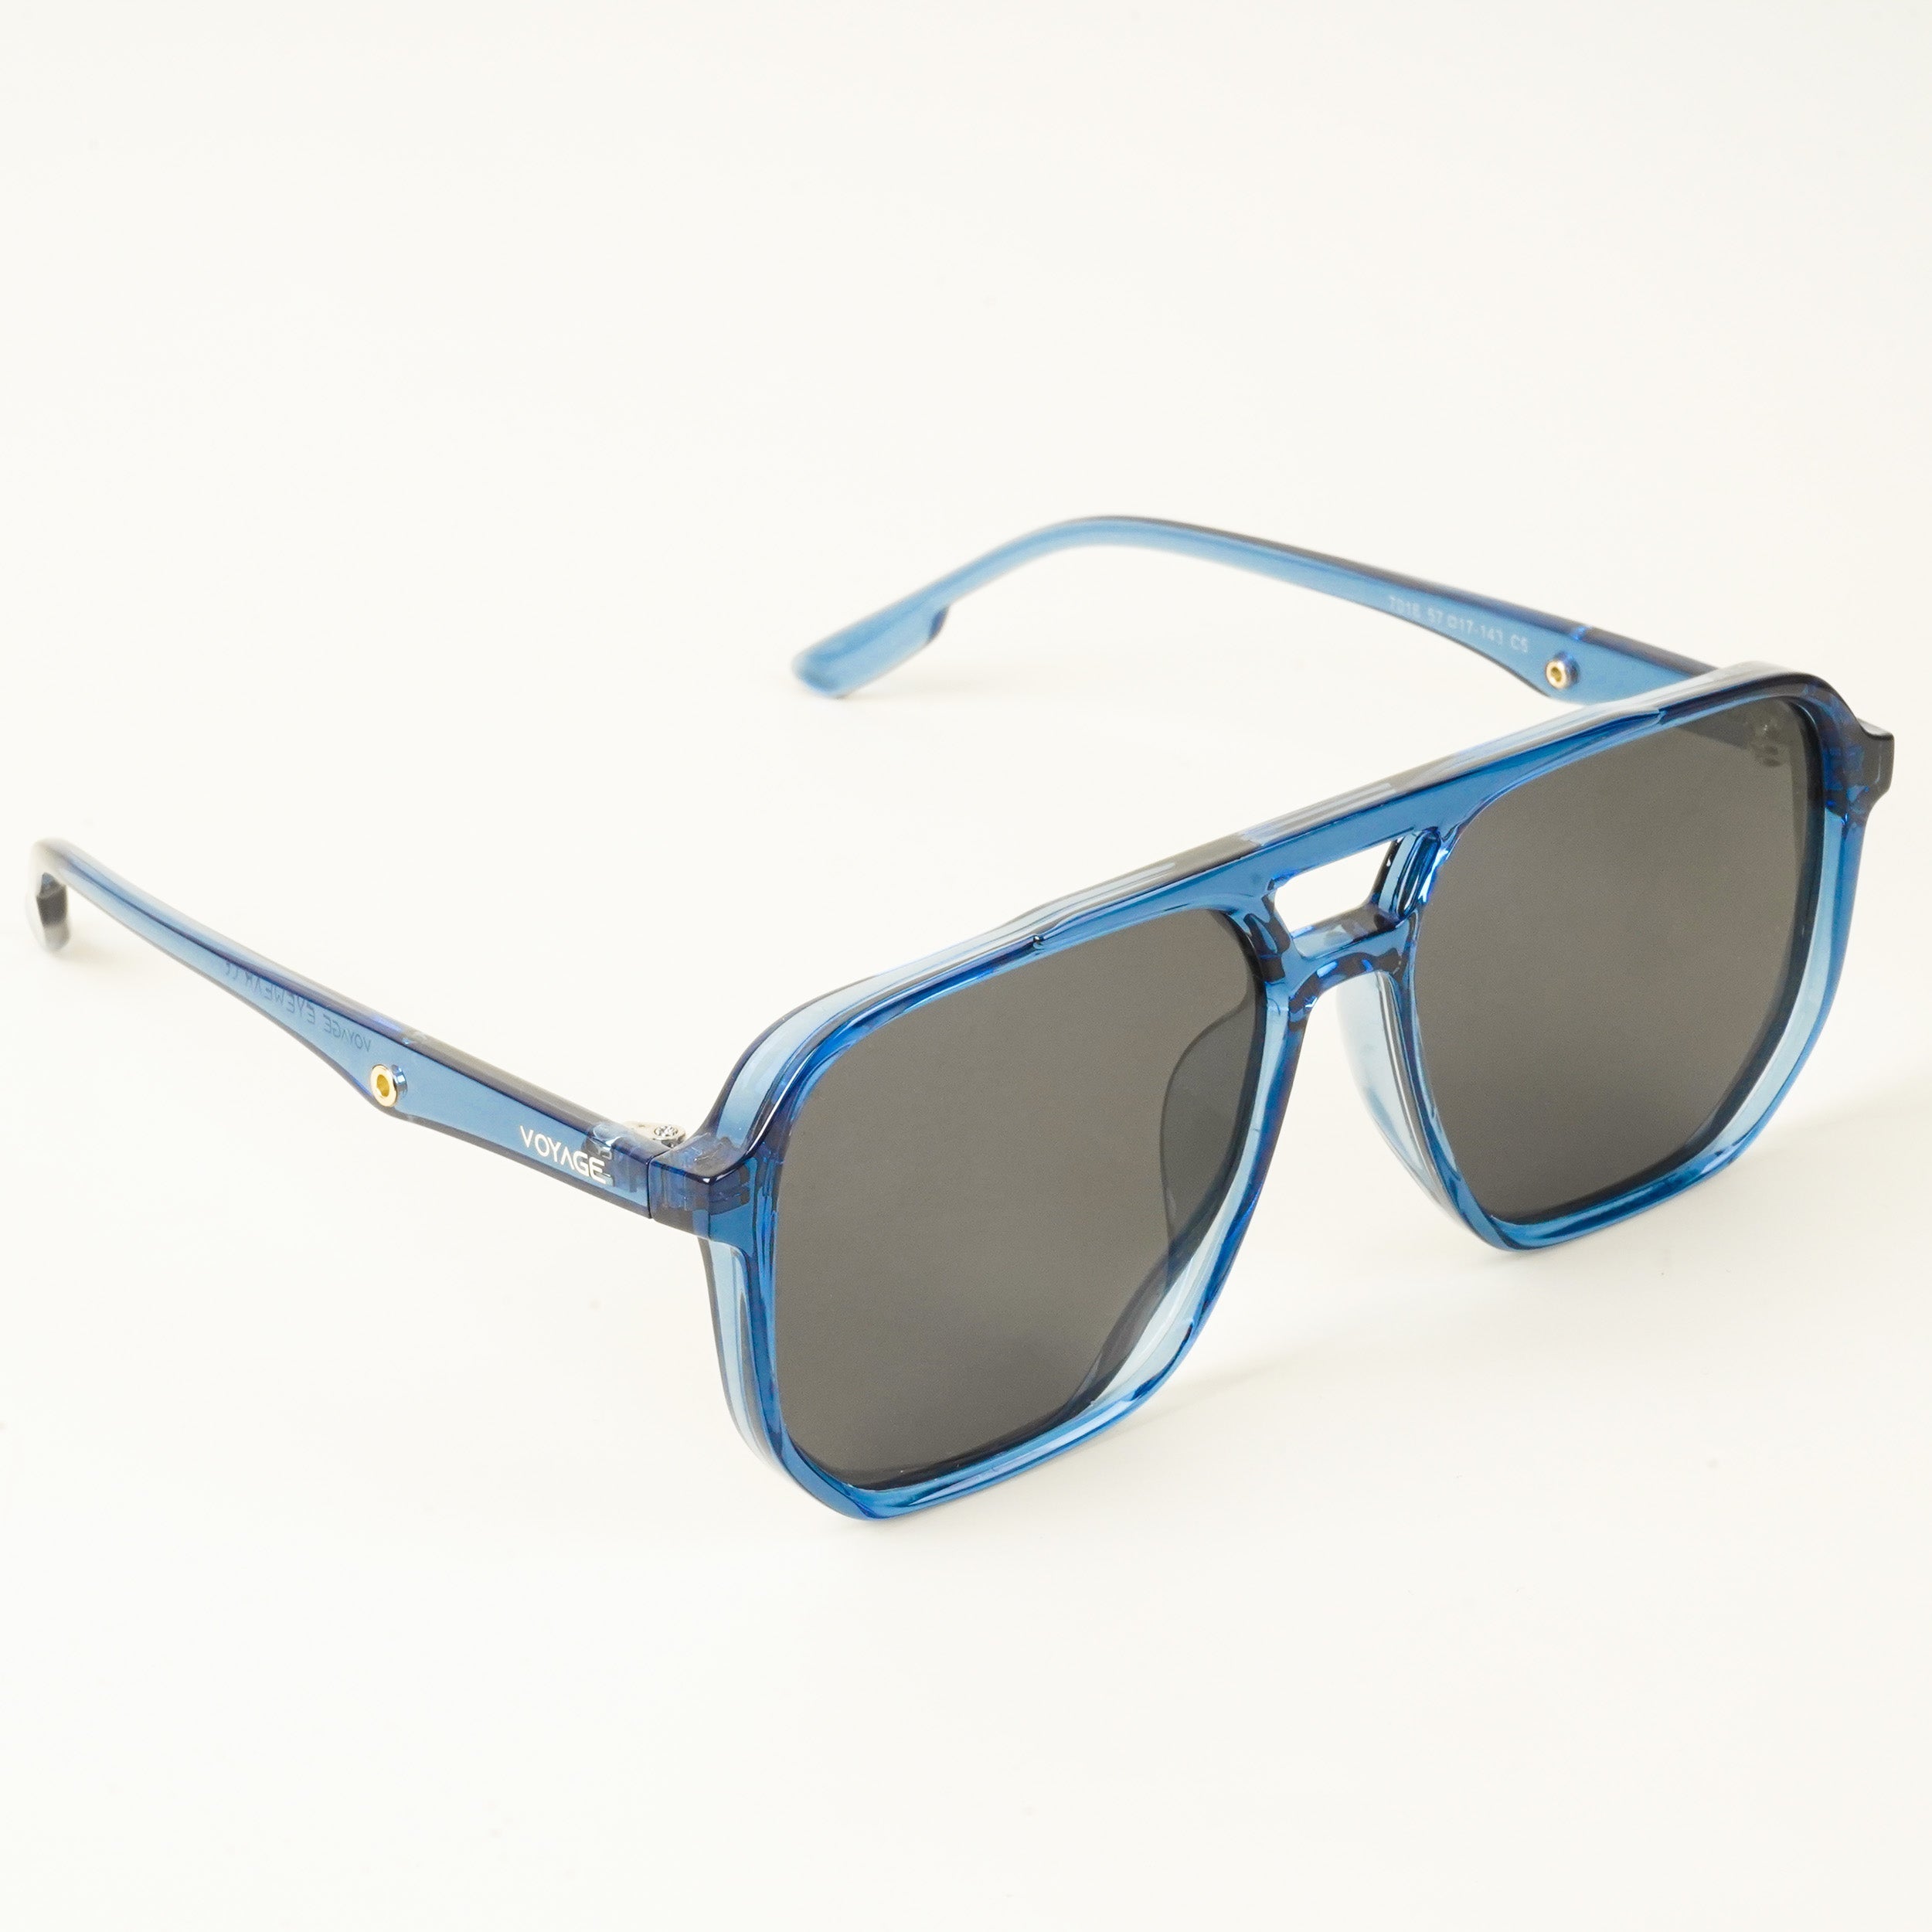 Voyage Wayfarer Polarized Sunglasses for Men & Women (Black Lens | Blue Frame - PMG4999)